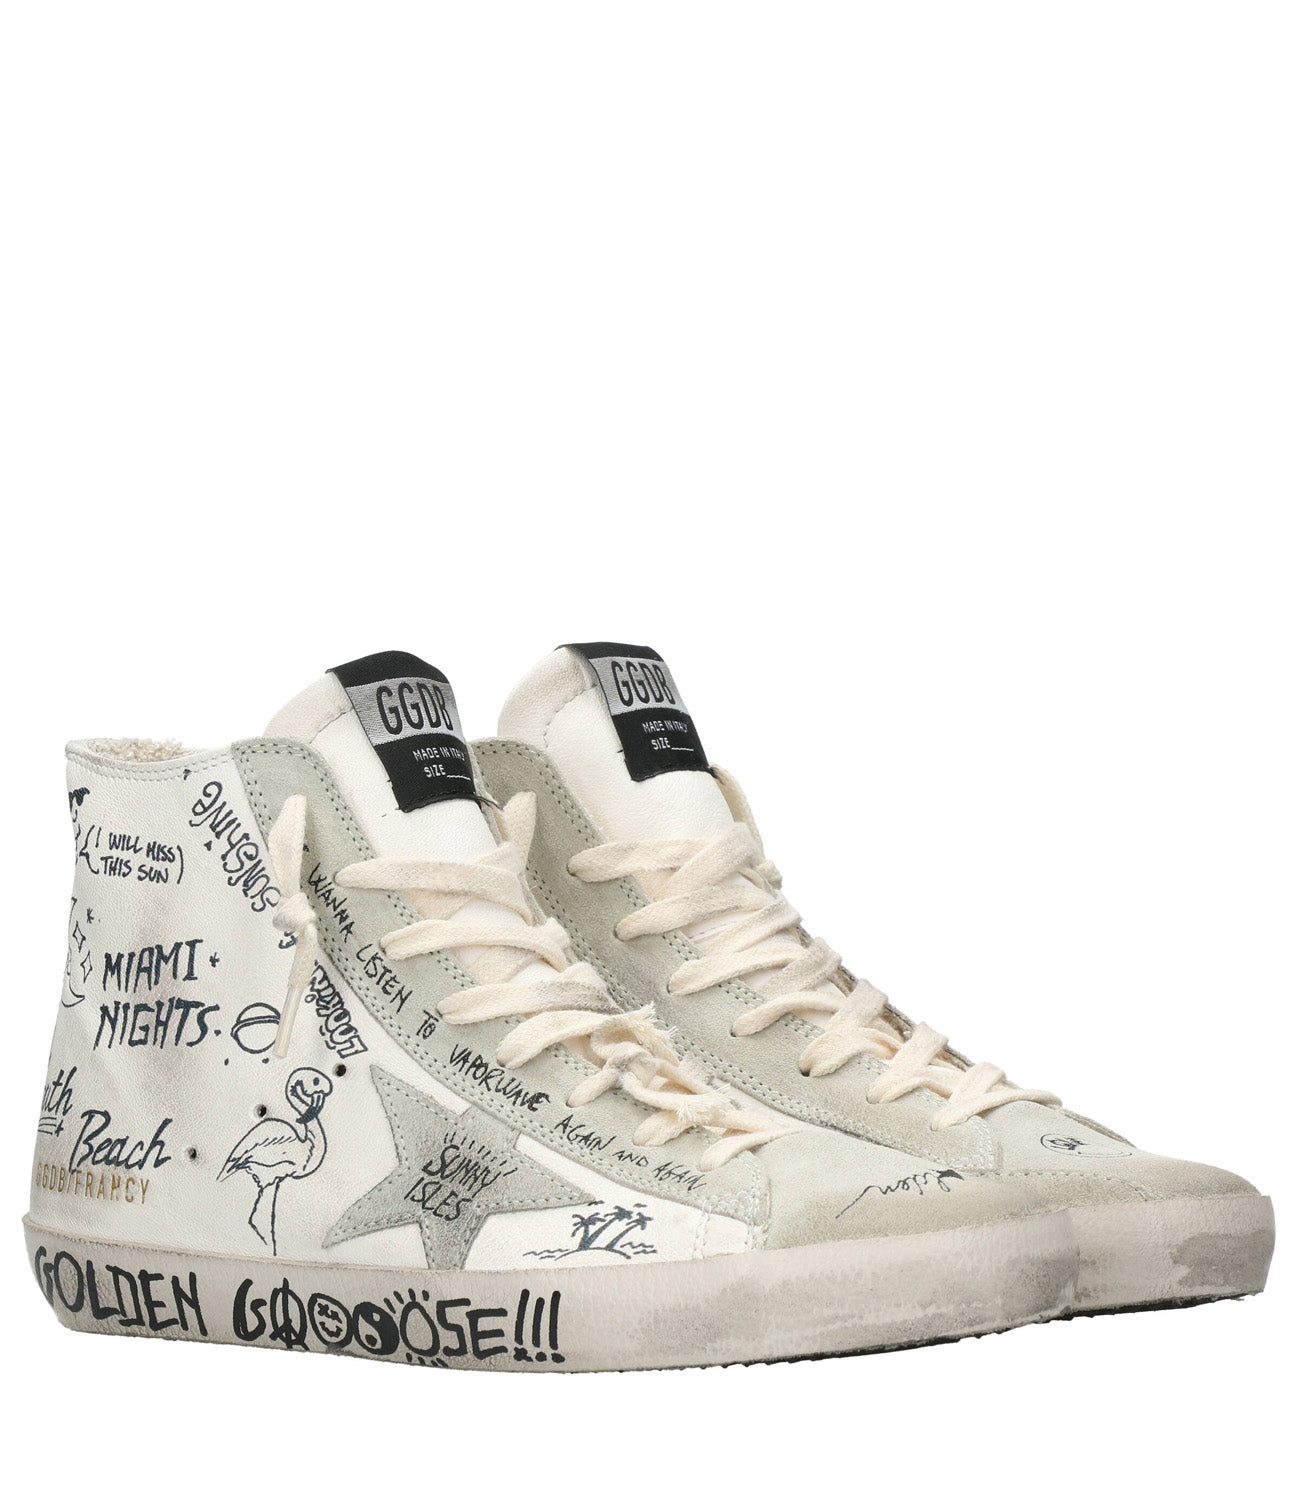 Golden Goose | Sneakers Francy Bianco, Ghiaccio e Nero